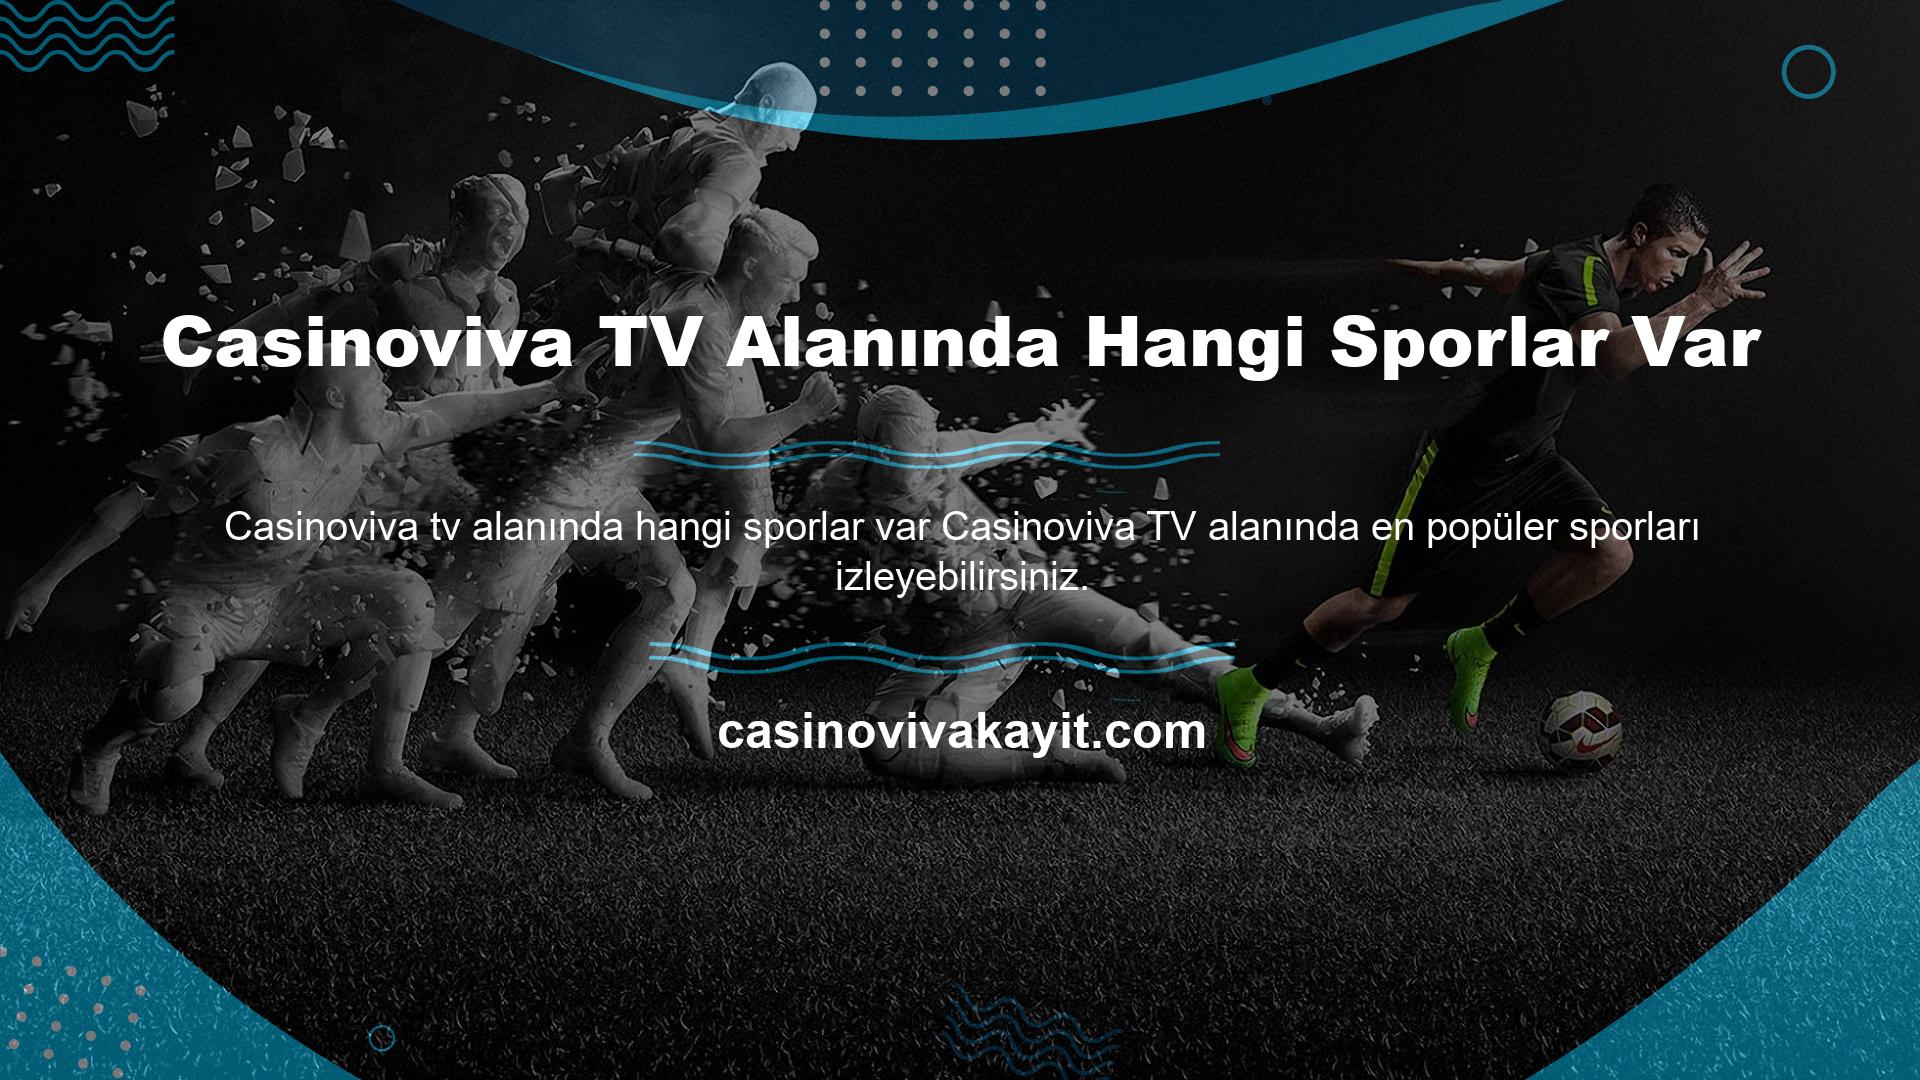 Casinoviva TV Alanında Hangi Sporlar Var